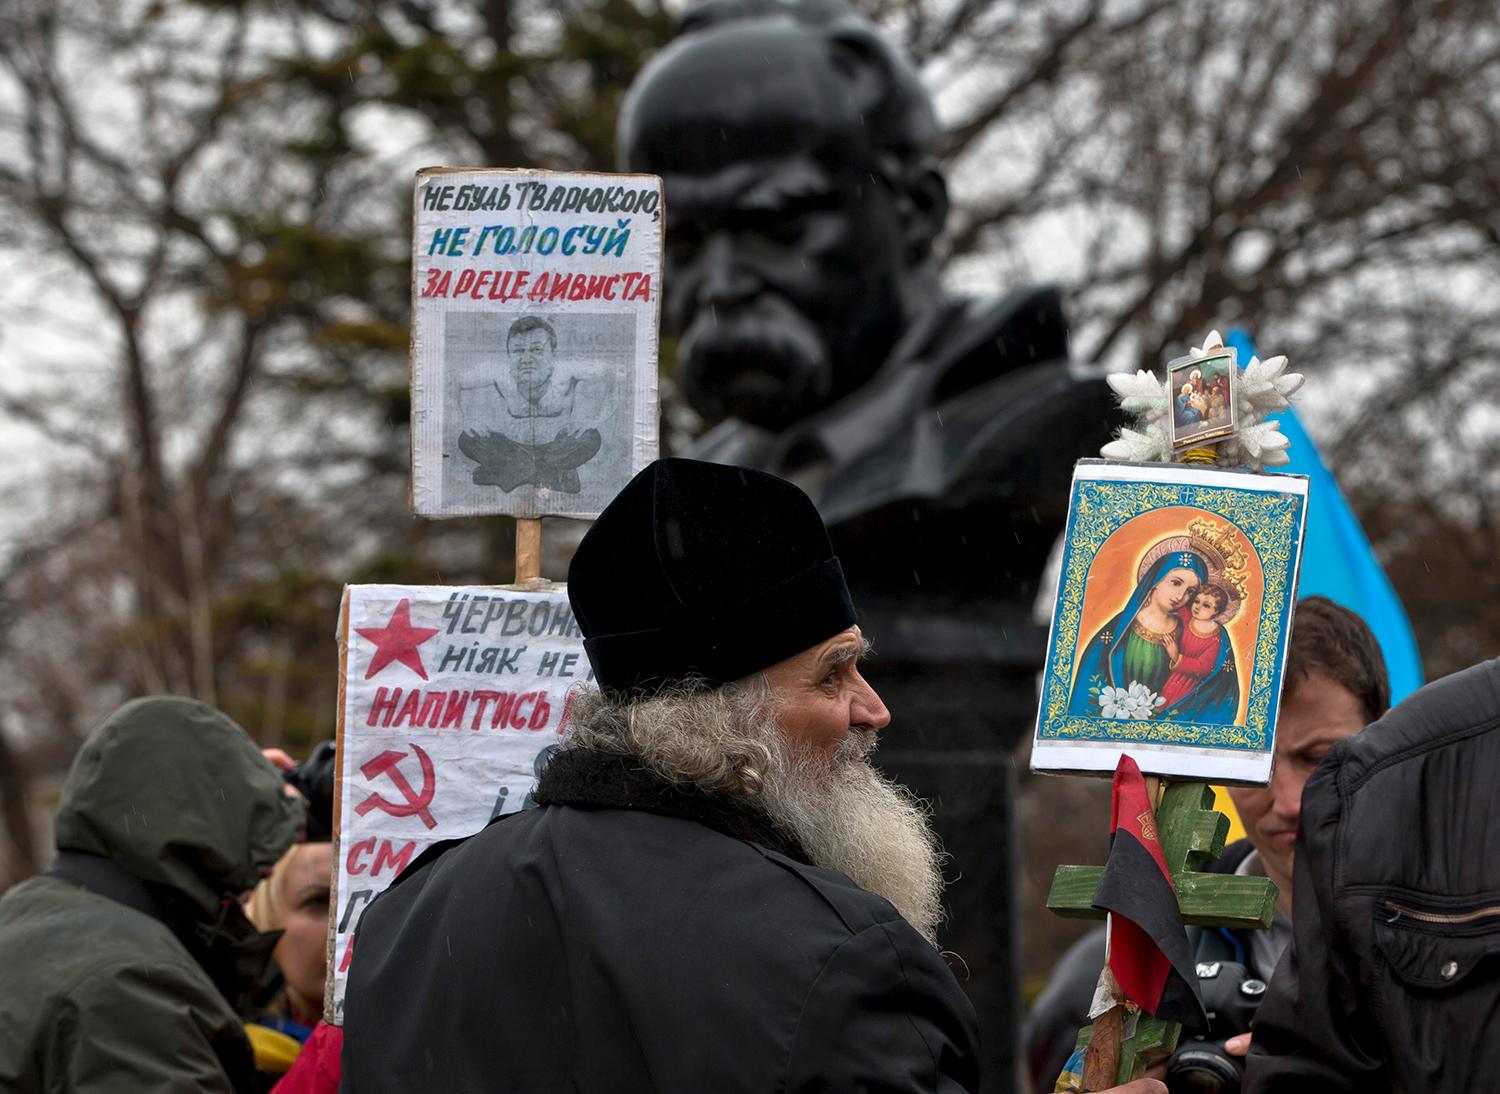 För Ukraina En ukrainsk-ortodox munk på en demonstration för att Krim ska tillhöra Ukraina i Simferopol fredag 7 mars. På plakatet står bland annat ”Rösta inte för brottslingen”, ”Röda stjärnan kräver mer blod” och ”Hammaren och skäran är död och hunger”.